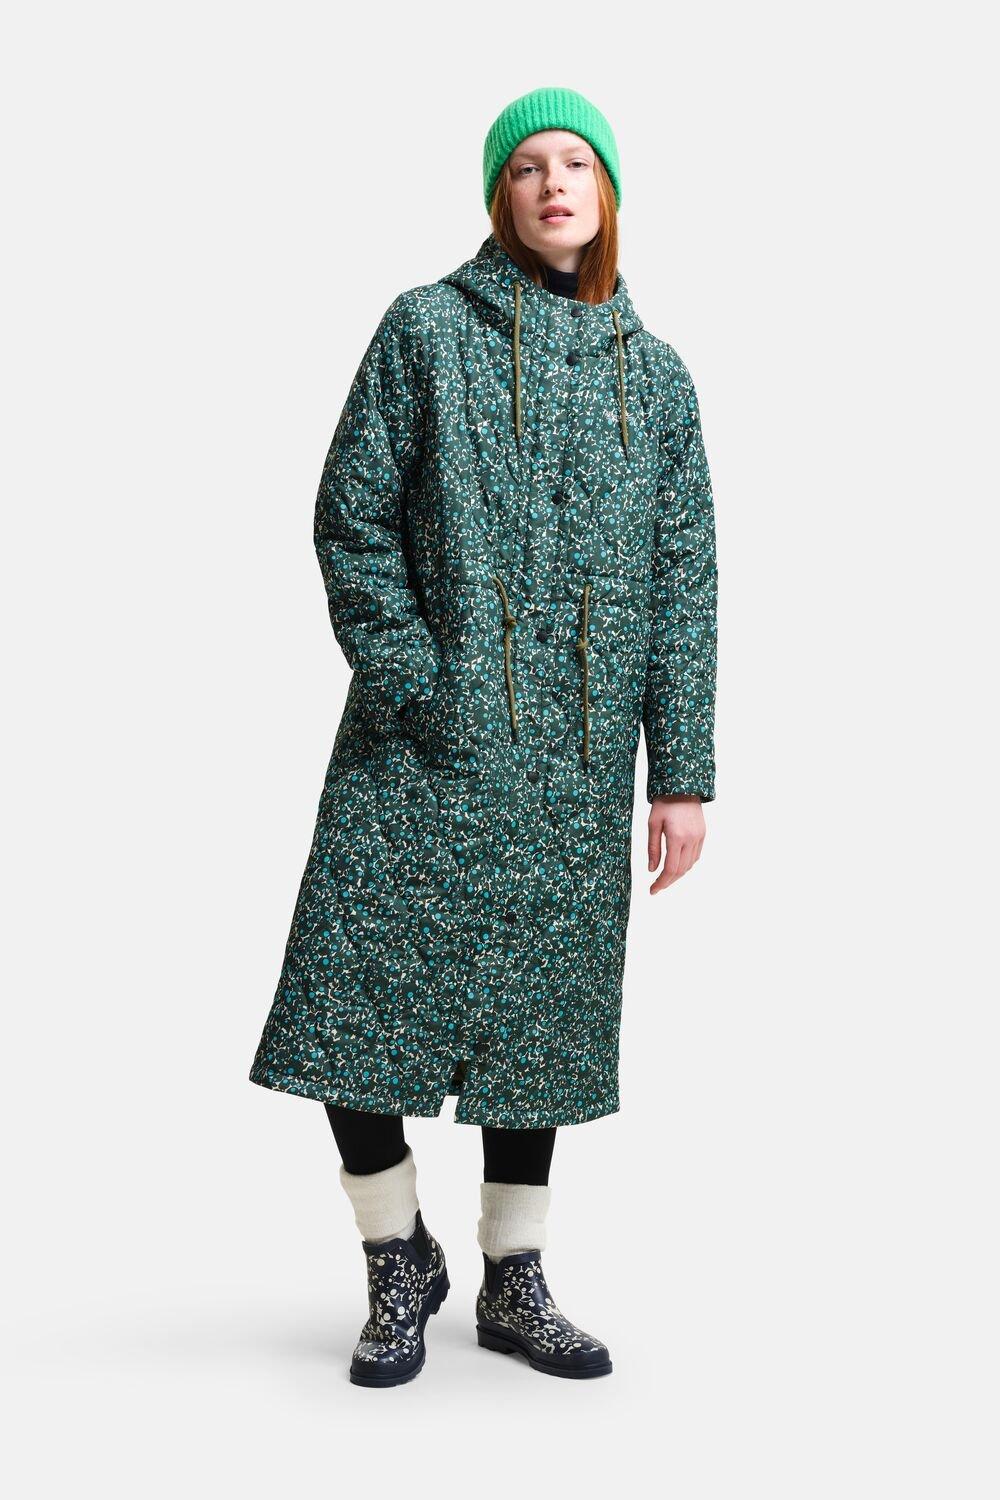 Удлиненная стеганая куртка Orla Kiely Regatta, зеленый женское кожаное пальто средней длины костюмный воротник плащ из овчины осенне зимнее пальто свободный силуэт натуральное пальто